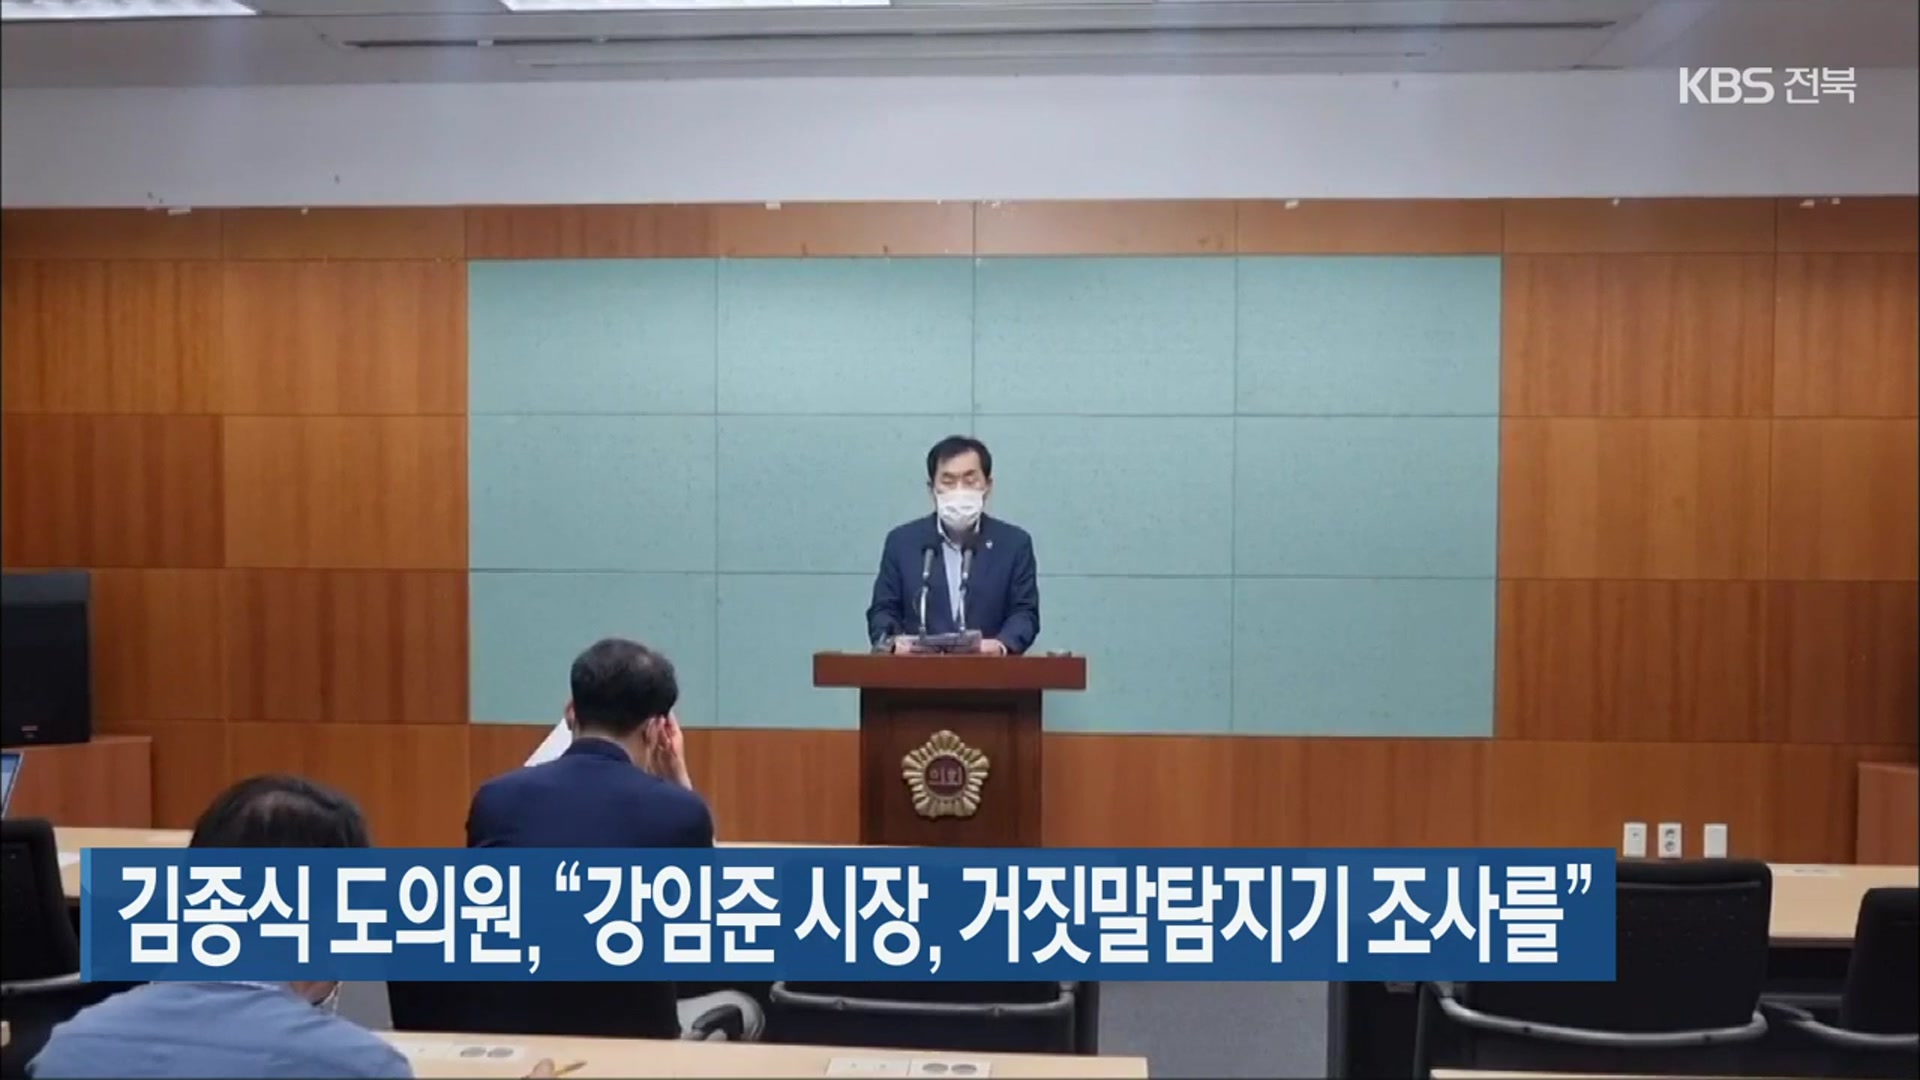 김종식 도의원 “강임준 군산시장, 거짓말탐지기 조사를”